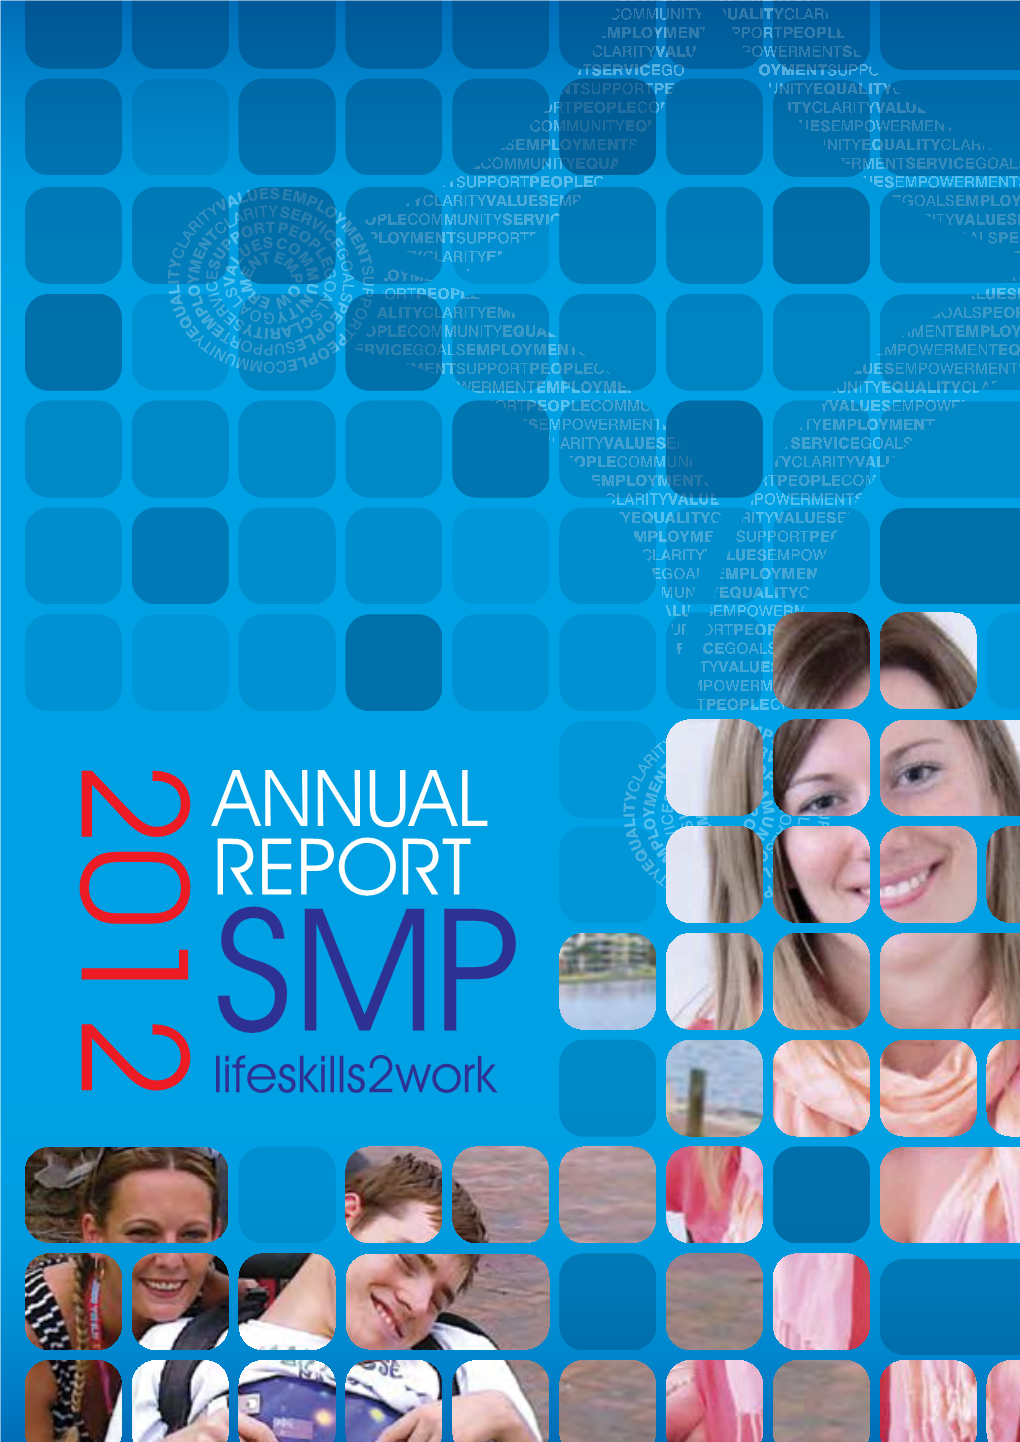 Annual Report 2011/2012 Annual Report 2011/2012